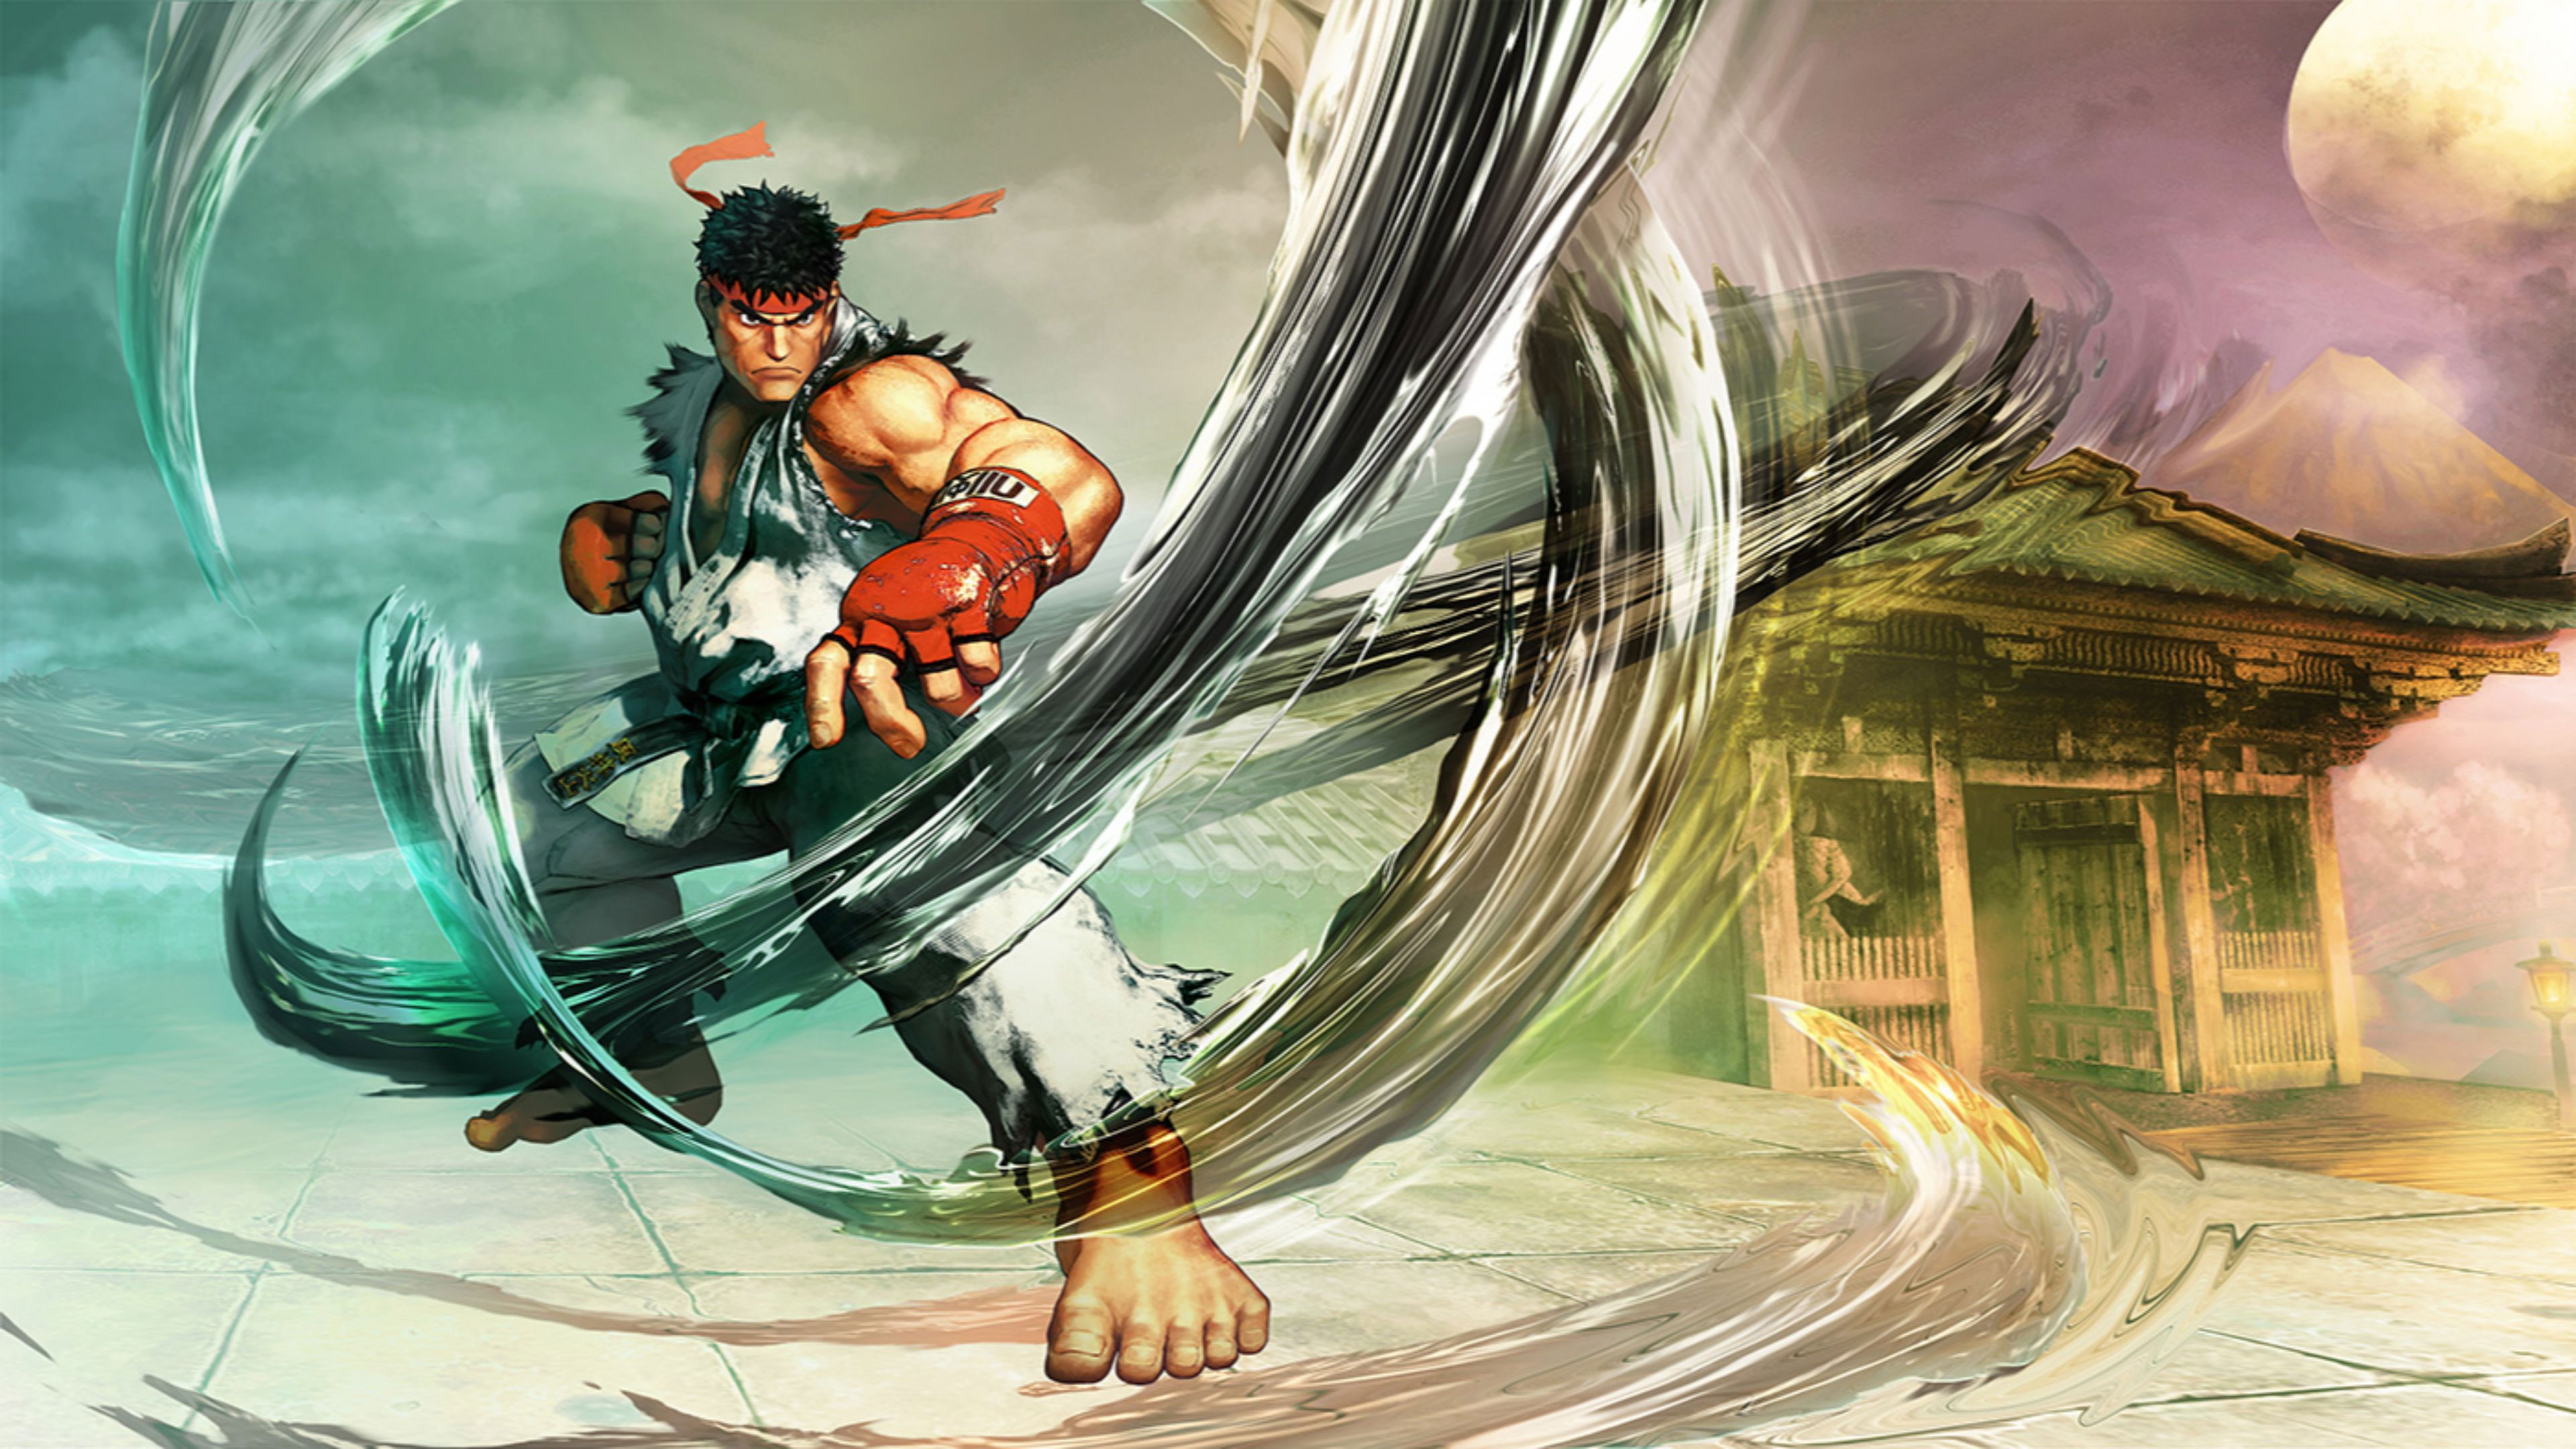 Street Fighter V Wallpapers in Ultra HD | 4K - Gameranx